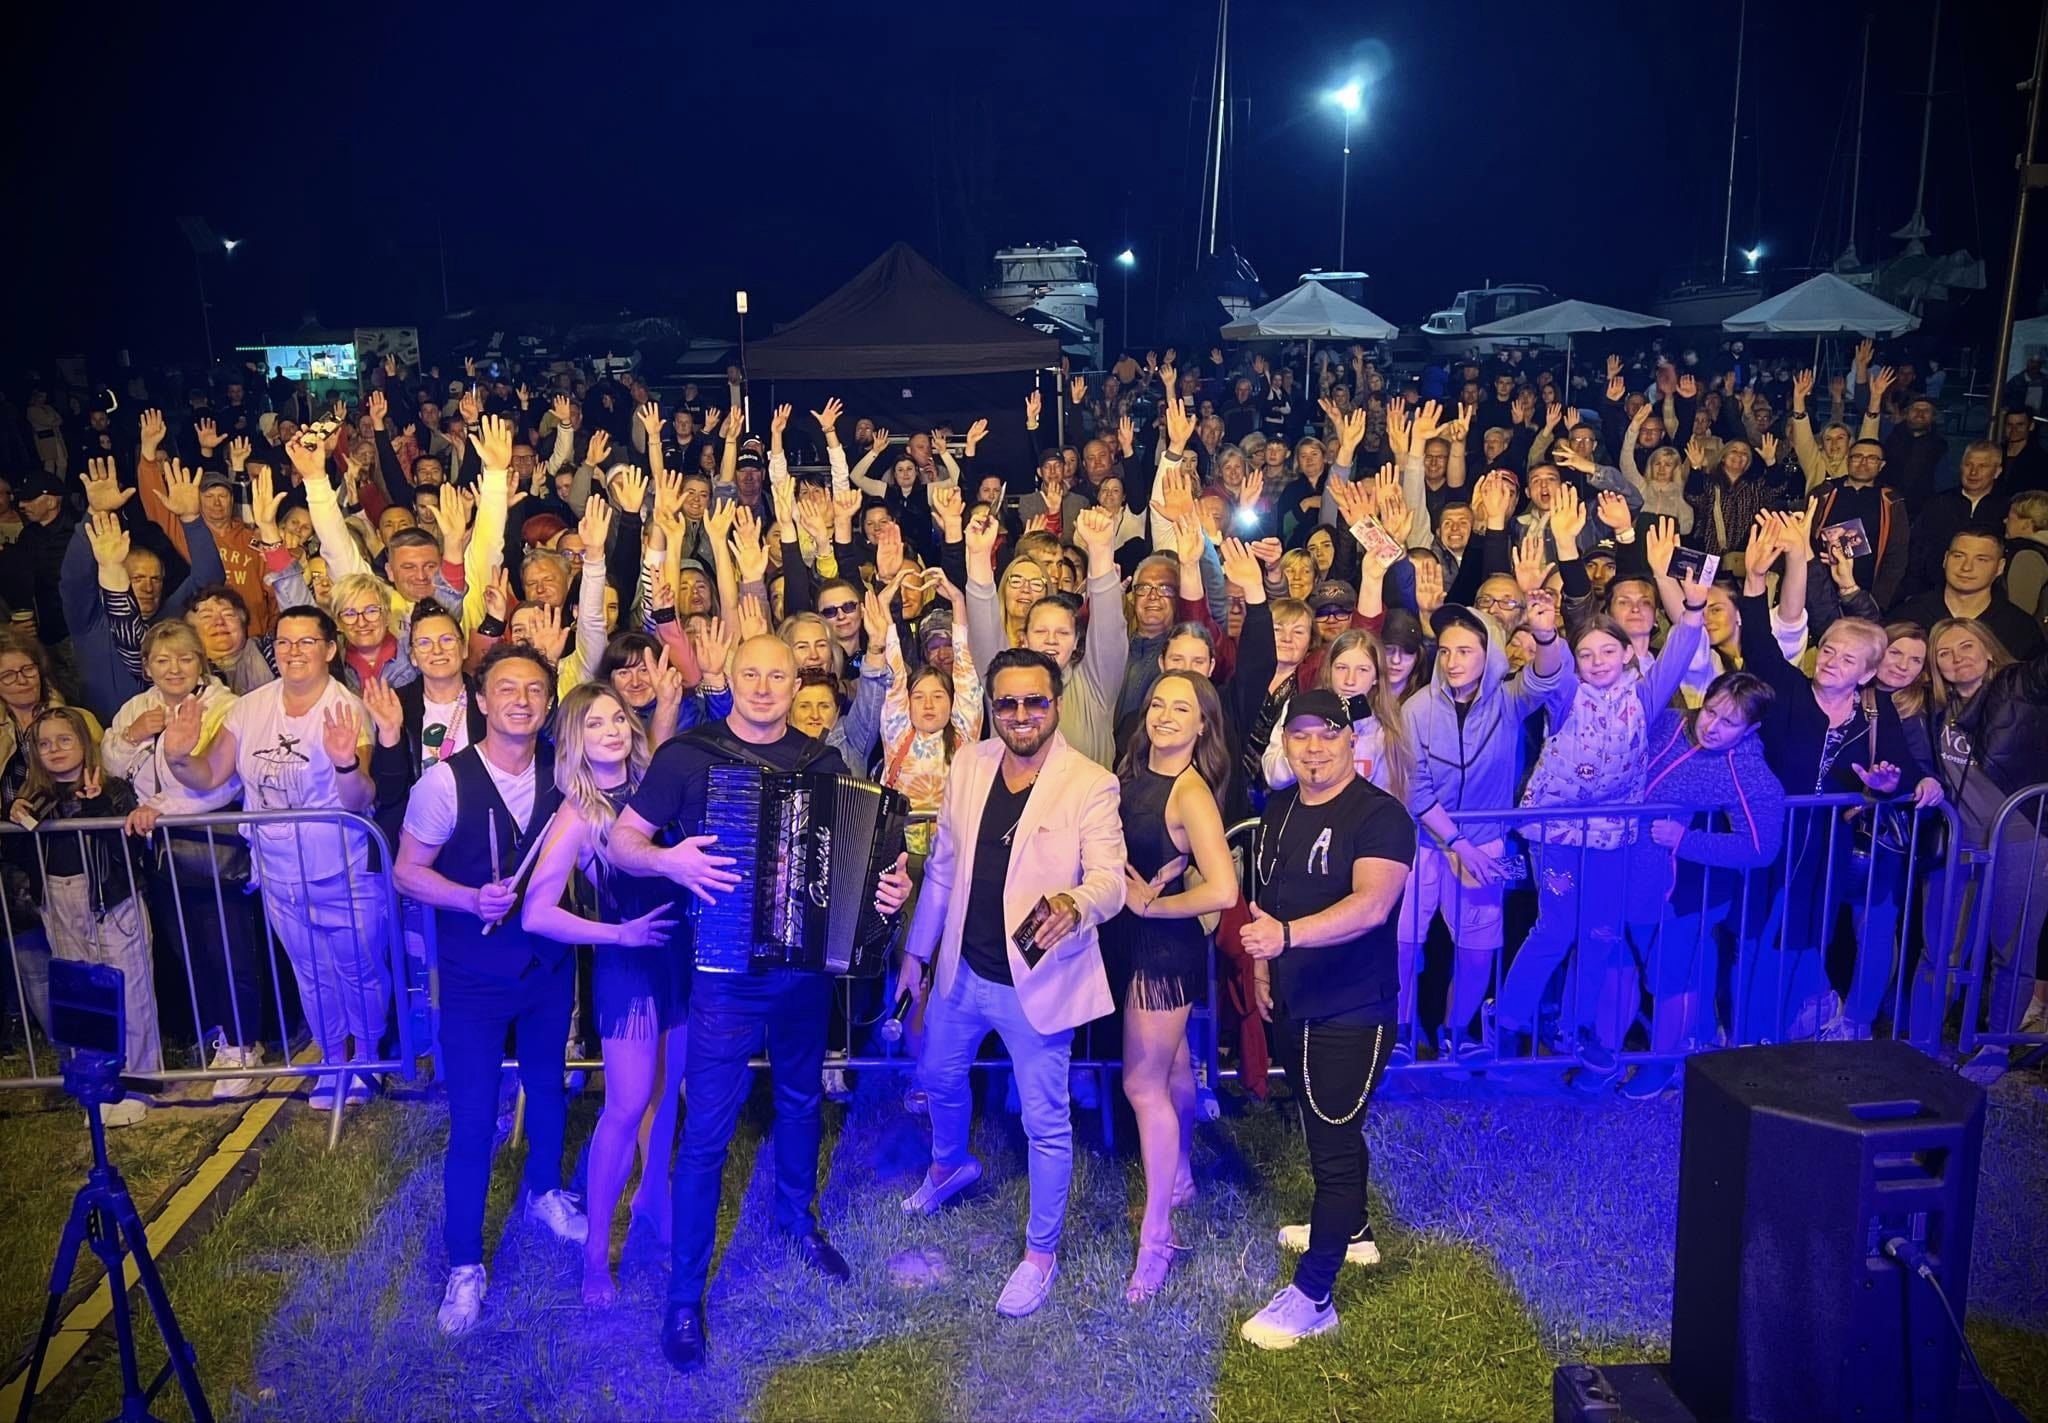 Andre rozgrzewa fanów w Błotniku: tłumy śpiewają razem z gwiazdą disco polo
